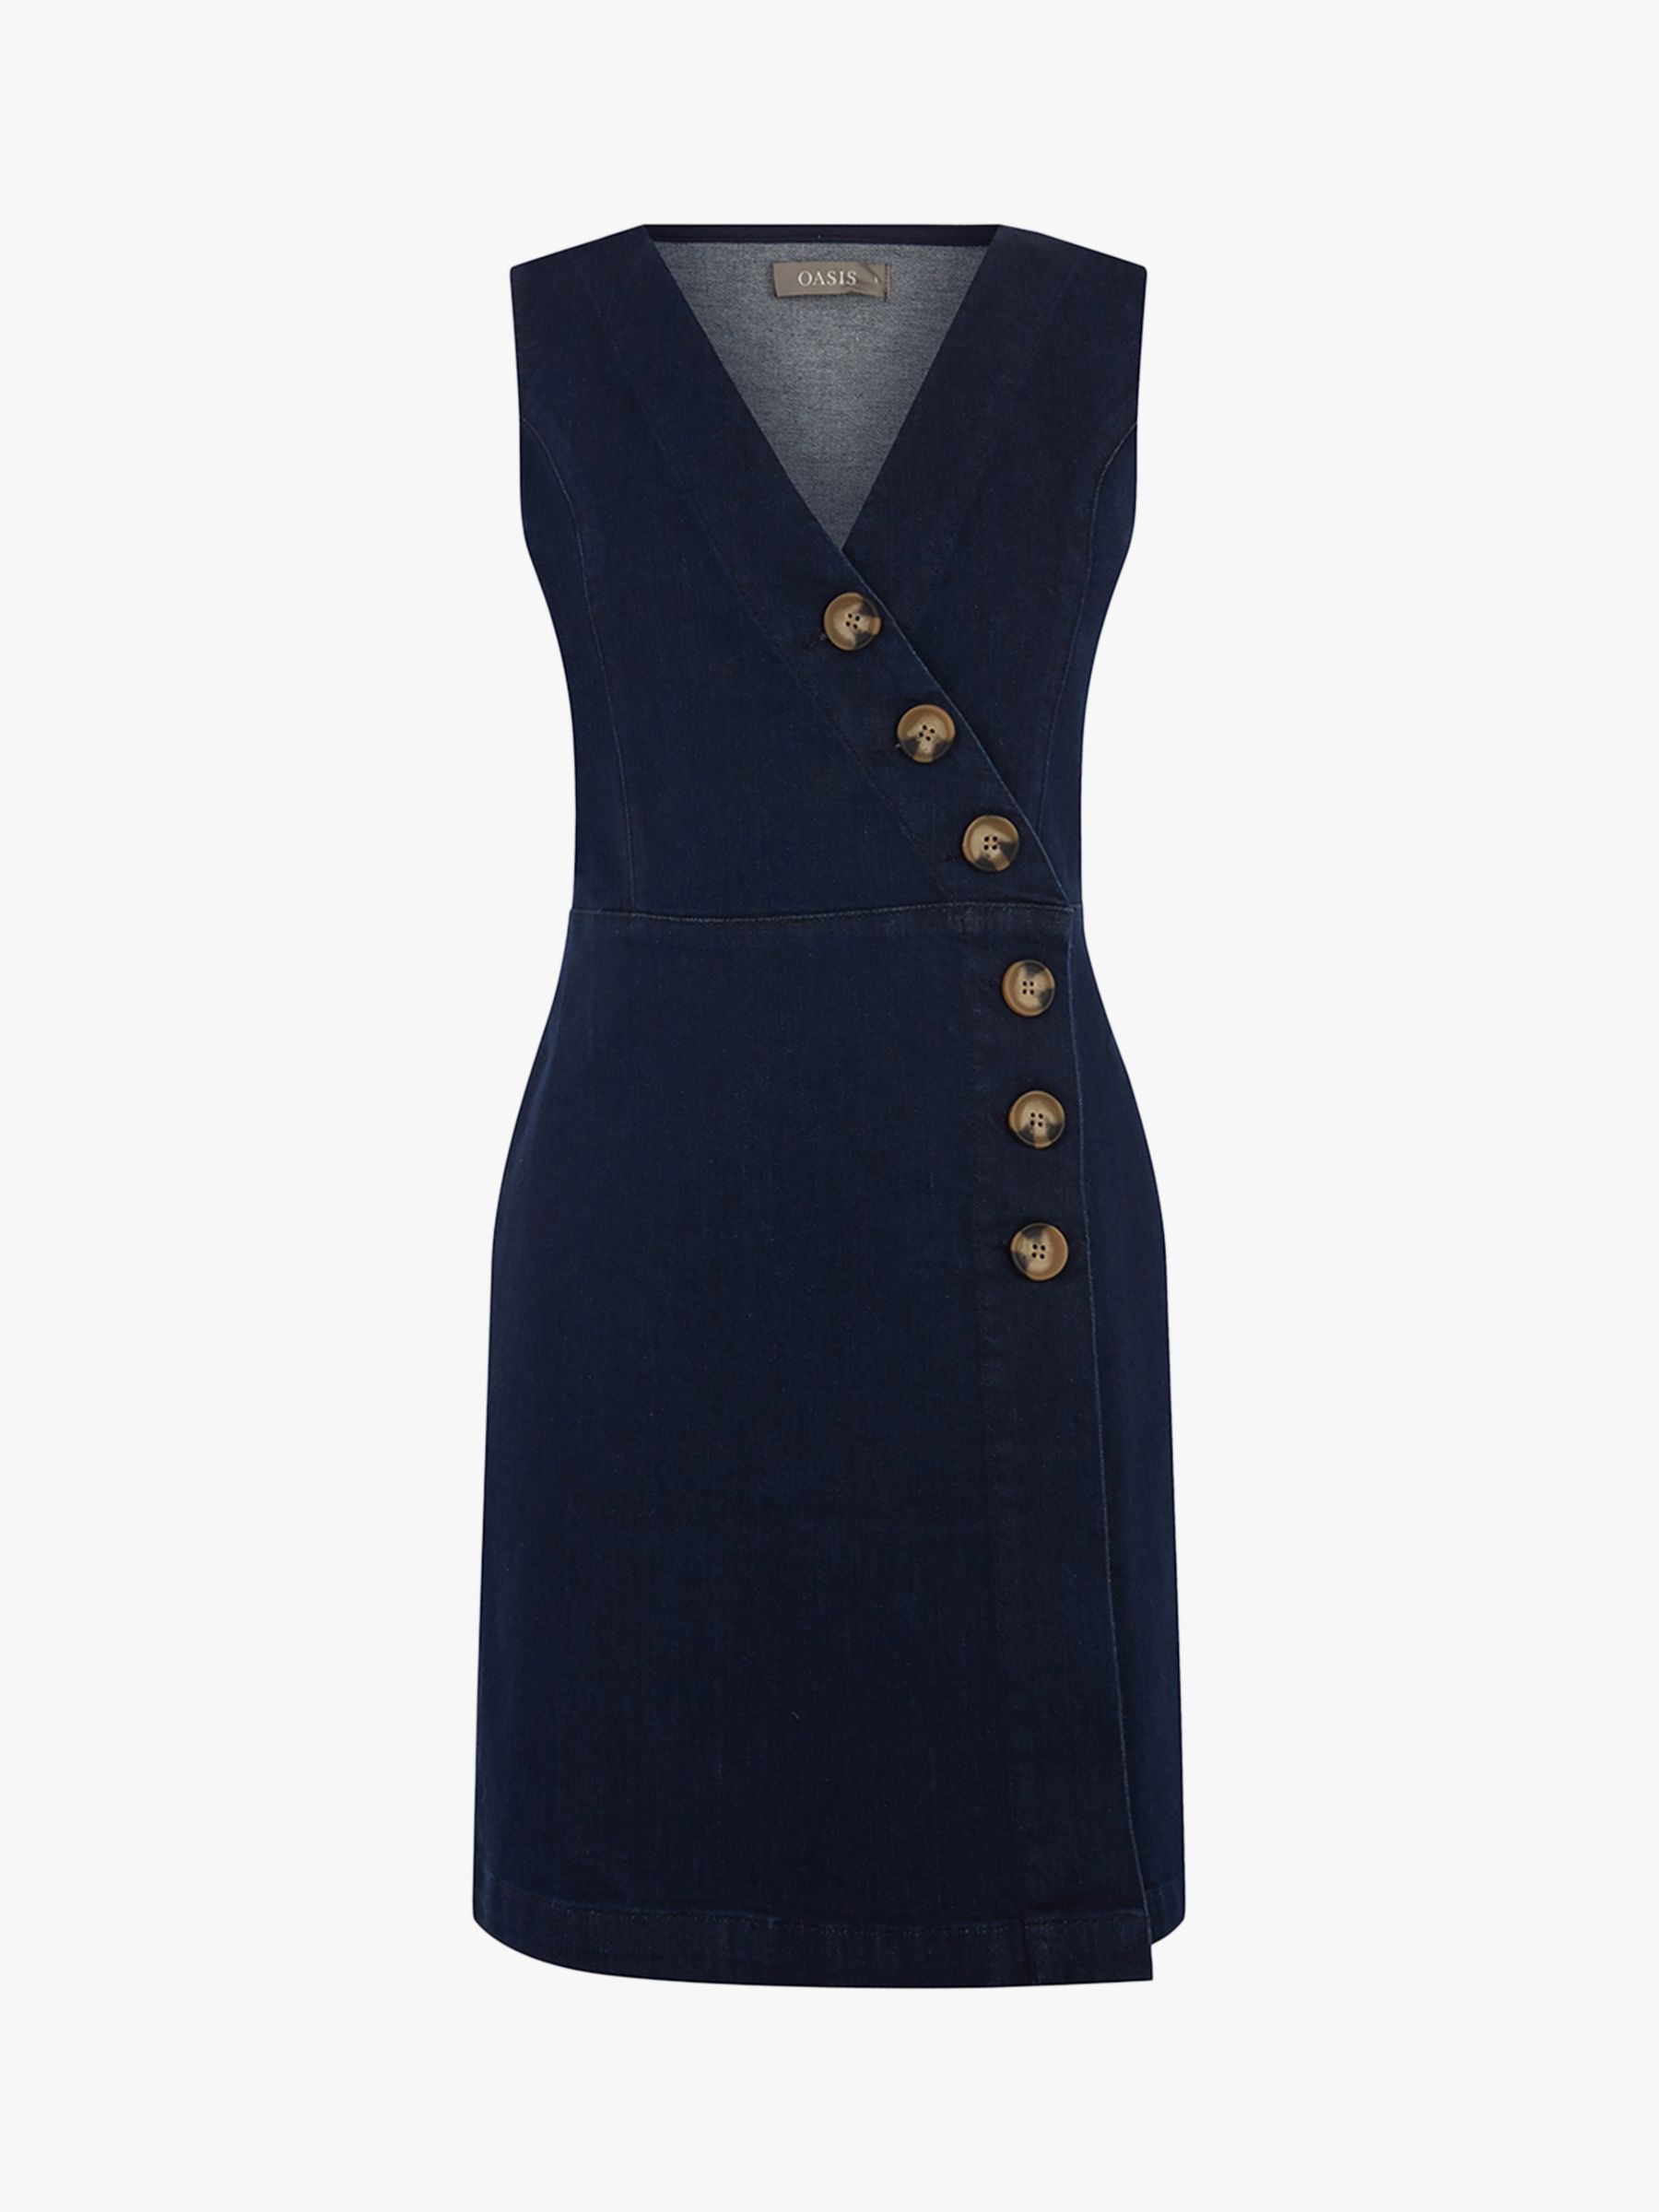 Oasis Button Structured Dress, Dark Wash